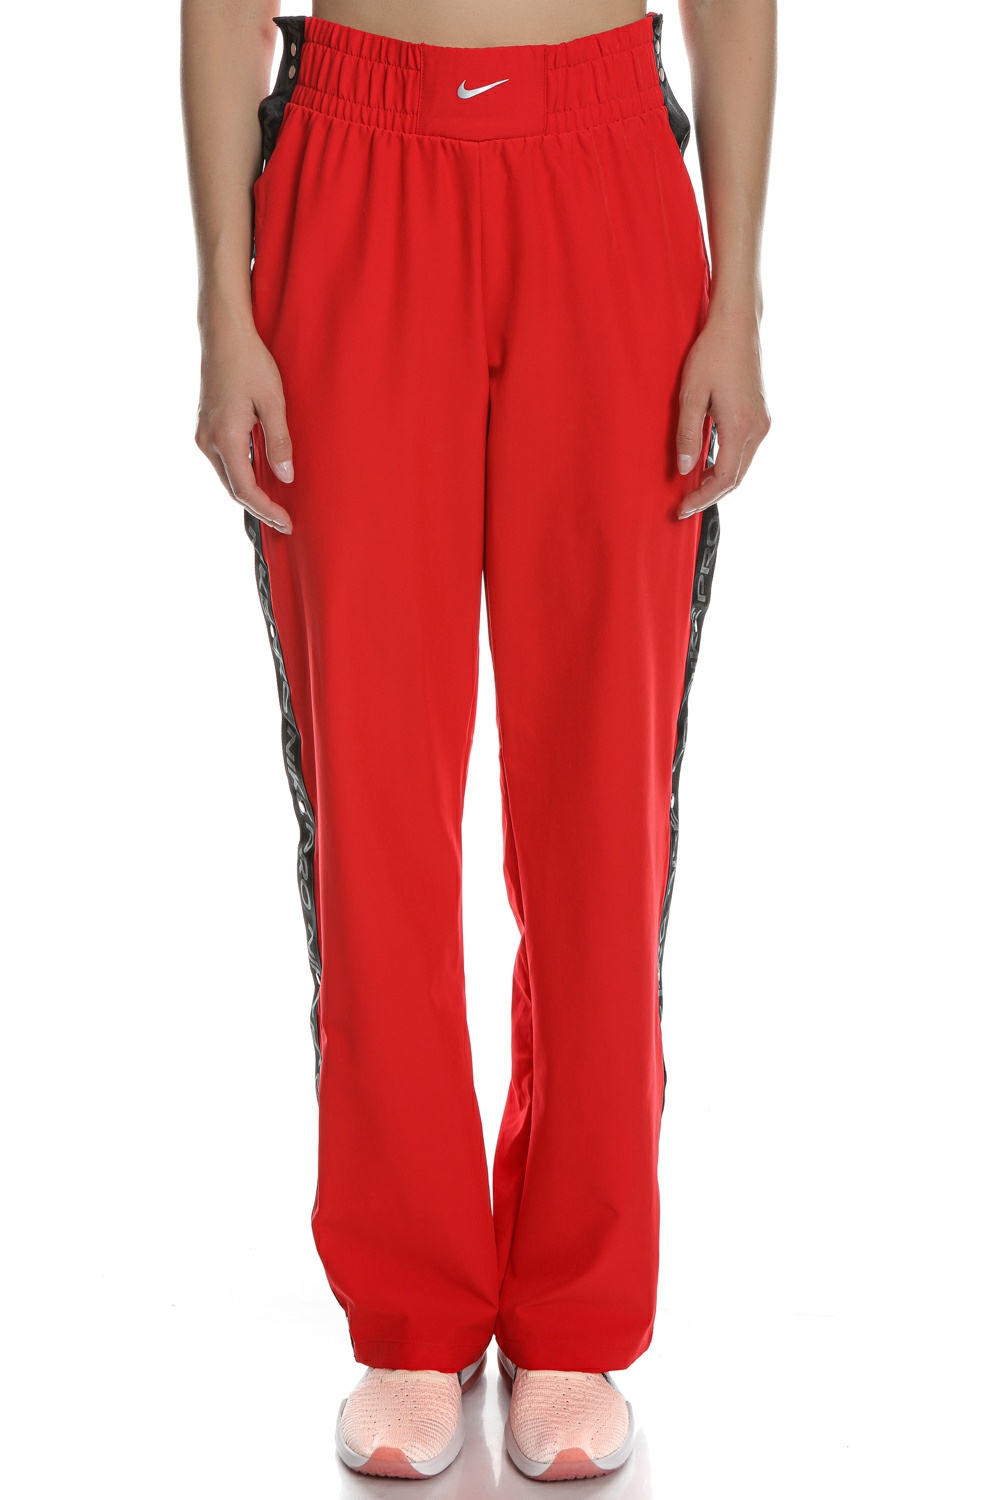 Γυναικεία/Ρούχα/Αθλητικά/Φόρμες NIKE - Γυναικείο παντελόνι φόρμας Nike Pro CLN TEAR AWAY κόκκινο